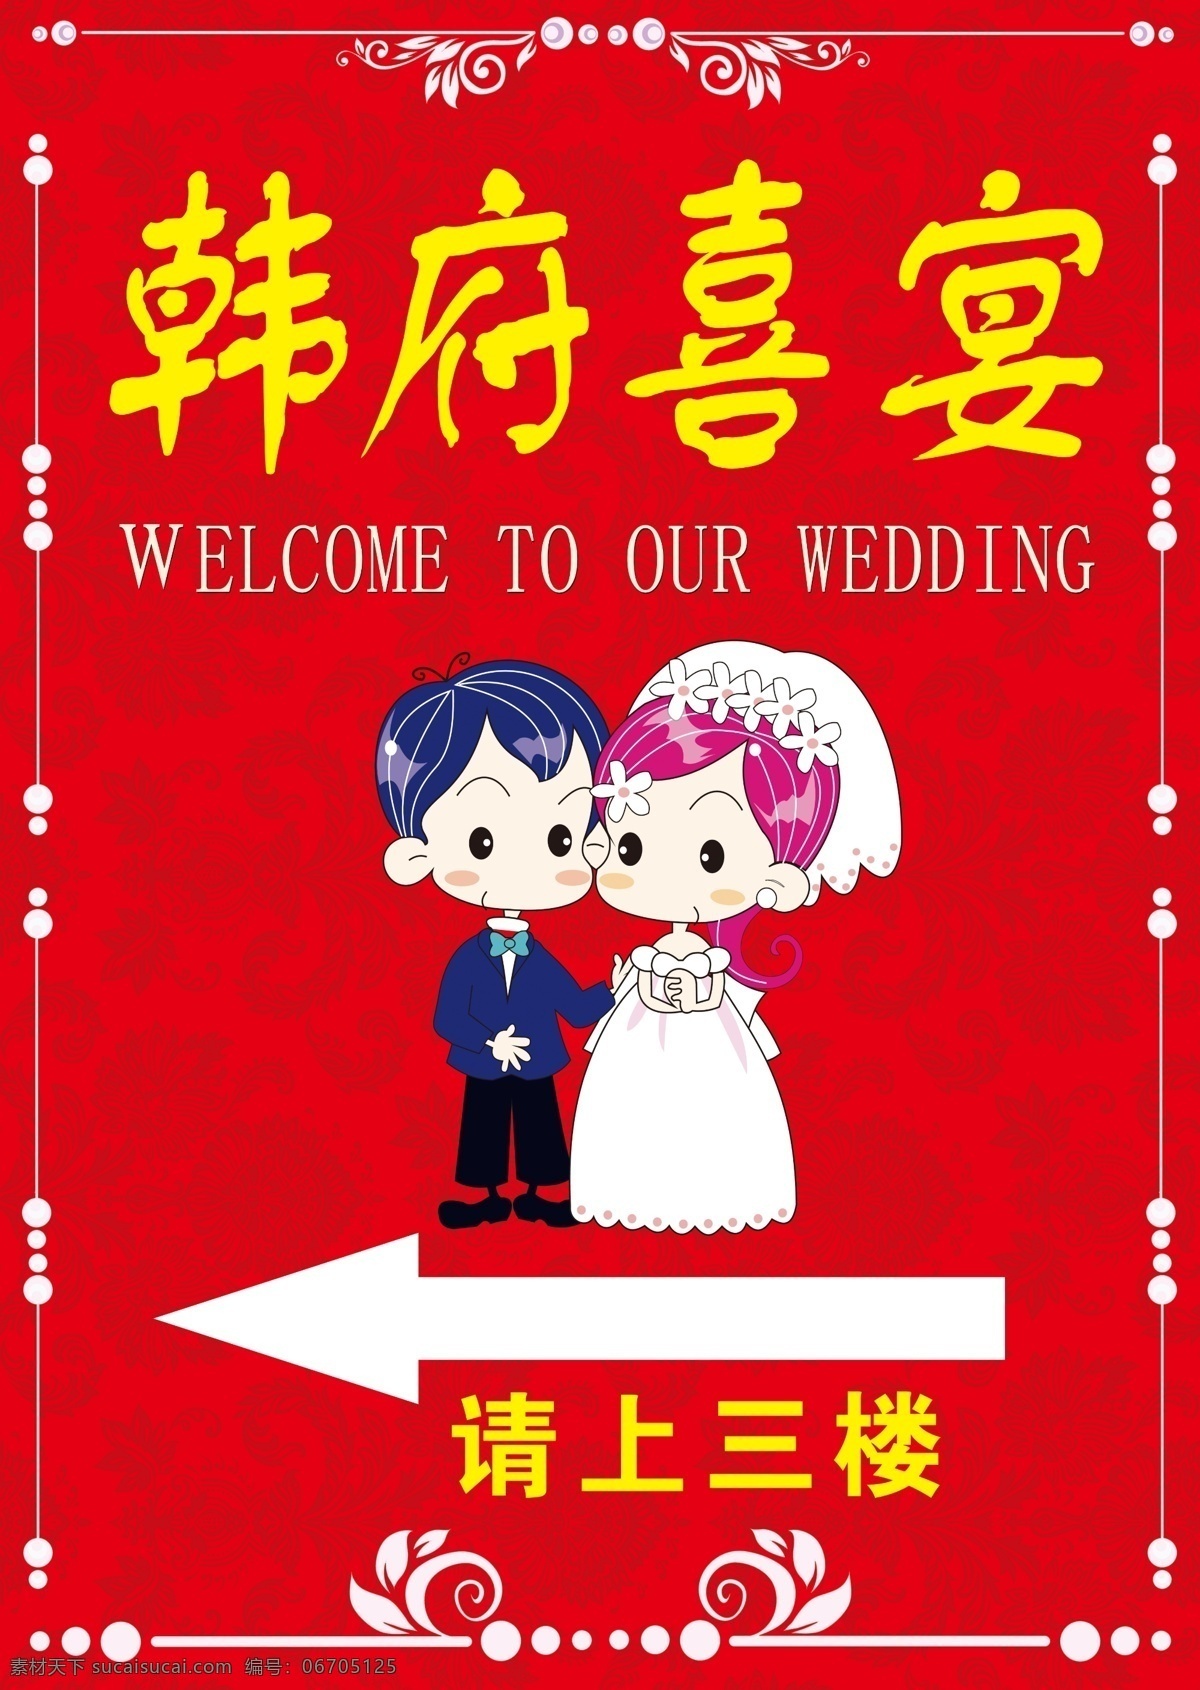 婚礼引导牌 婚礼卡通小人 红色背景 婚礼牌 指示牌 喜结良缘 爱情